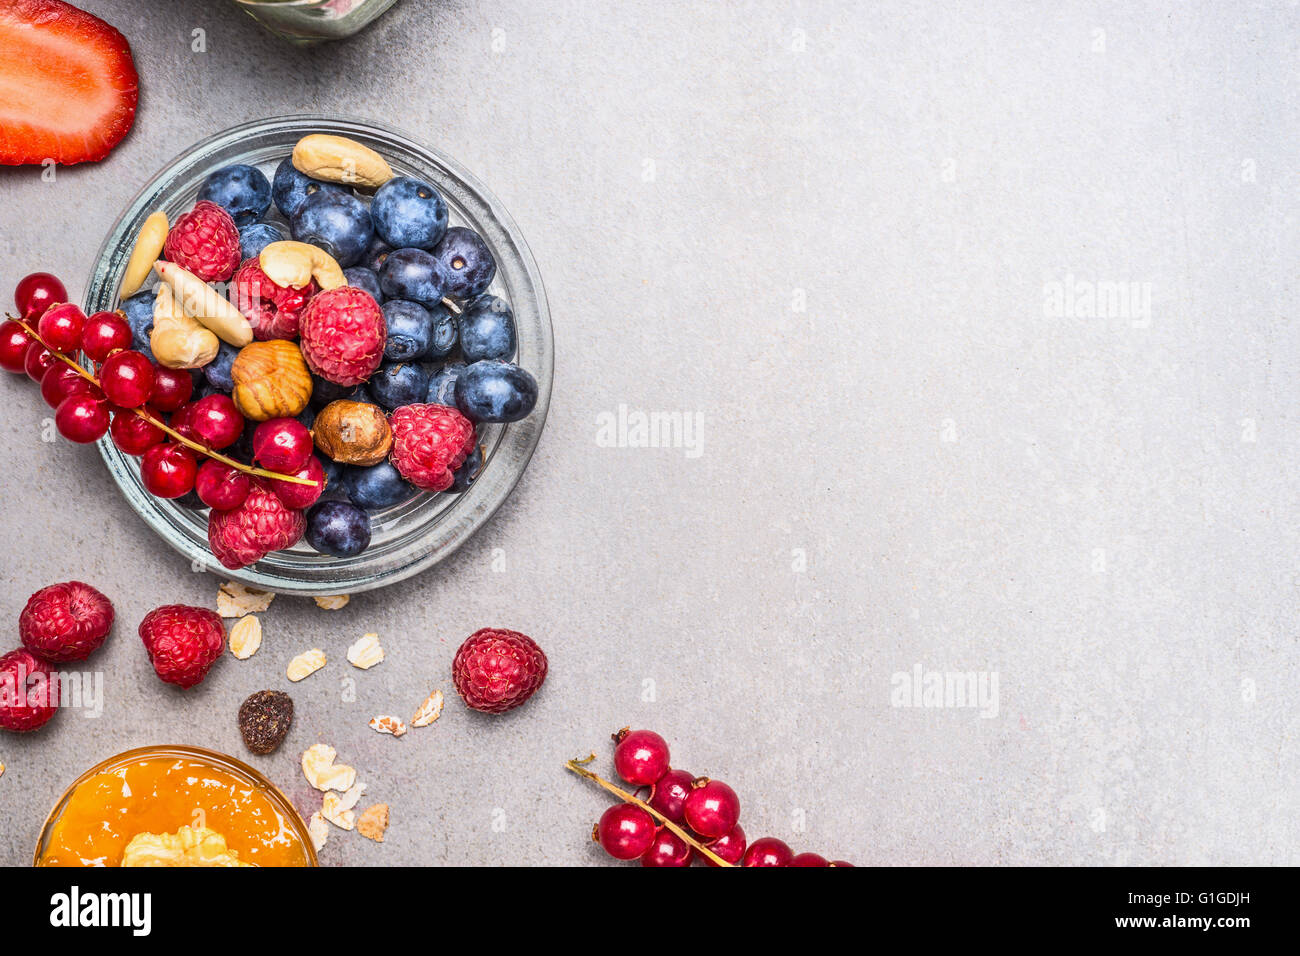 Frischen Sommerbeeren und Muttern auf grauem Stein Hintergrund, Ansicht von oben.  Gesundes Essen und sauberes Essen Konzept Stockfoto